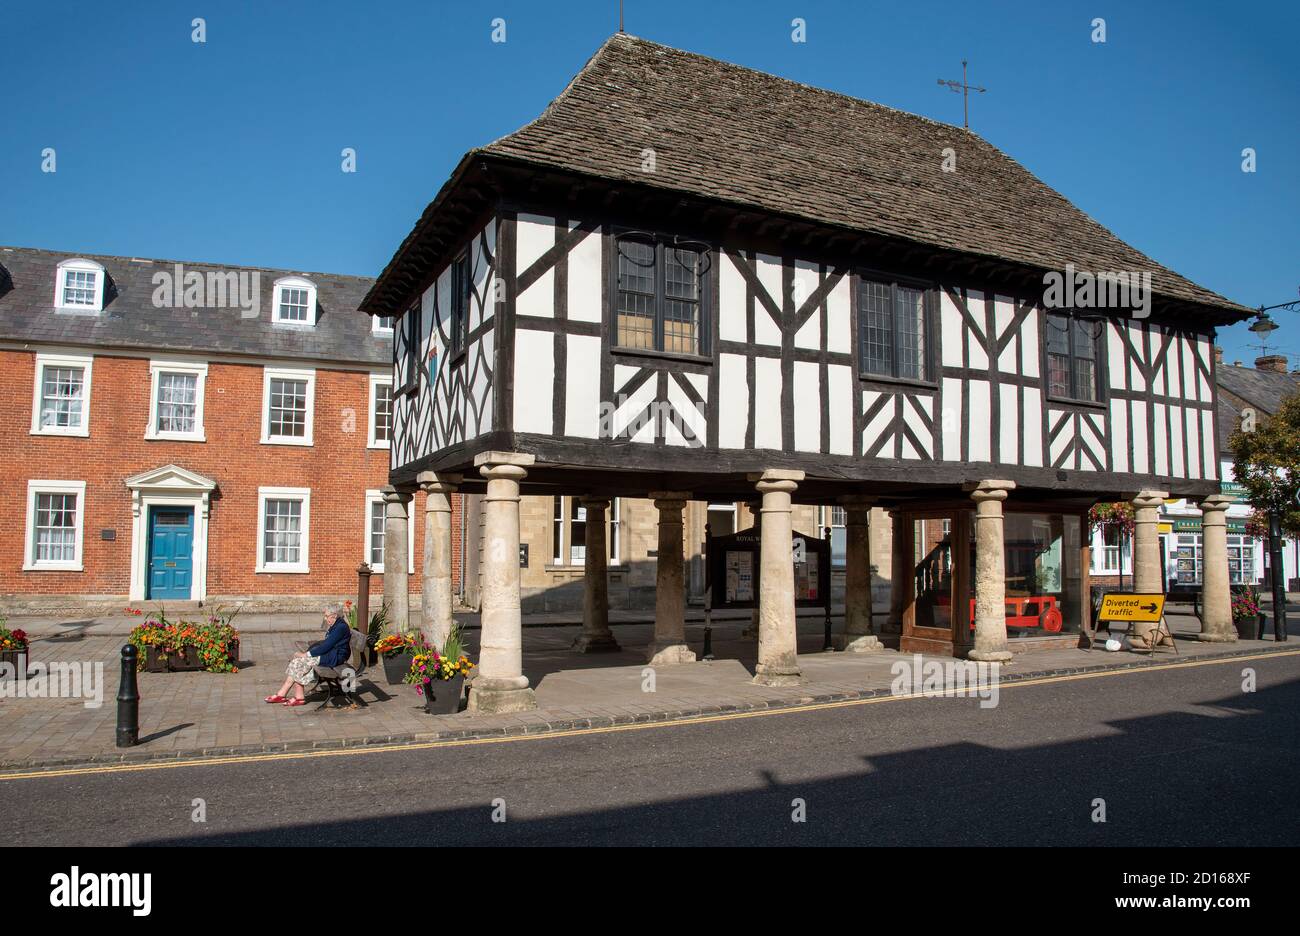 Royal Wootton Bassett, Wiltshire, Inglaterra, Reino Unido. 2020. El histórico mercado de la ciudad de Royal Wootton Bassett con el Ayuntamiento construido en el siglo 17. Foto de stock